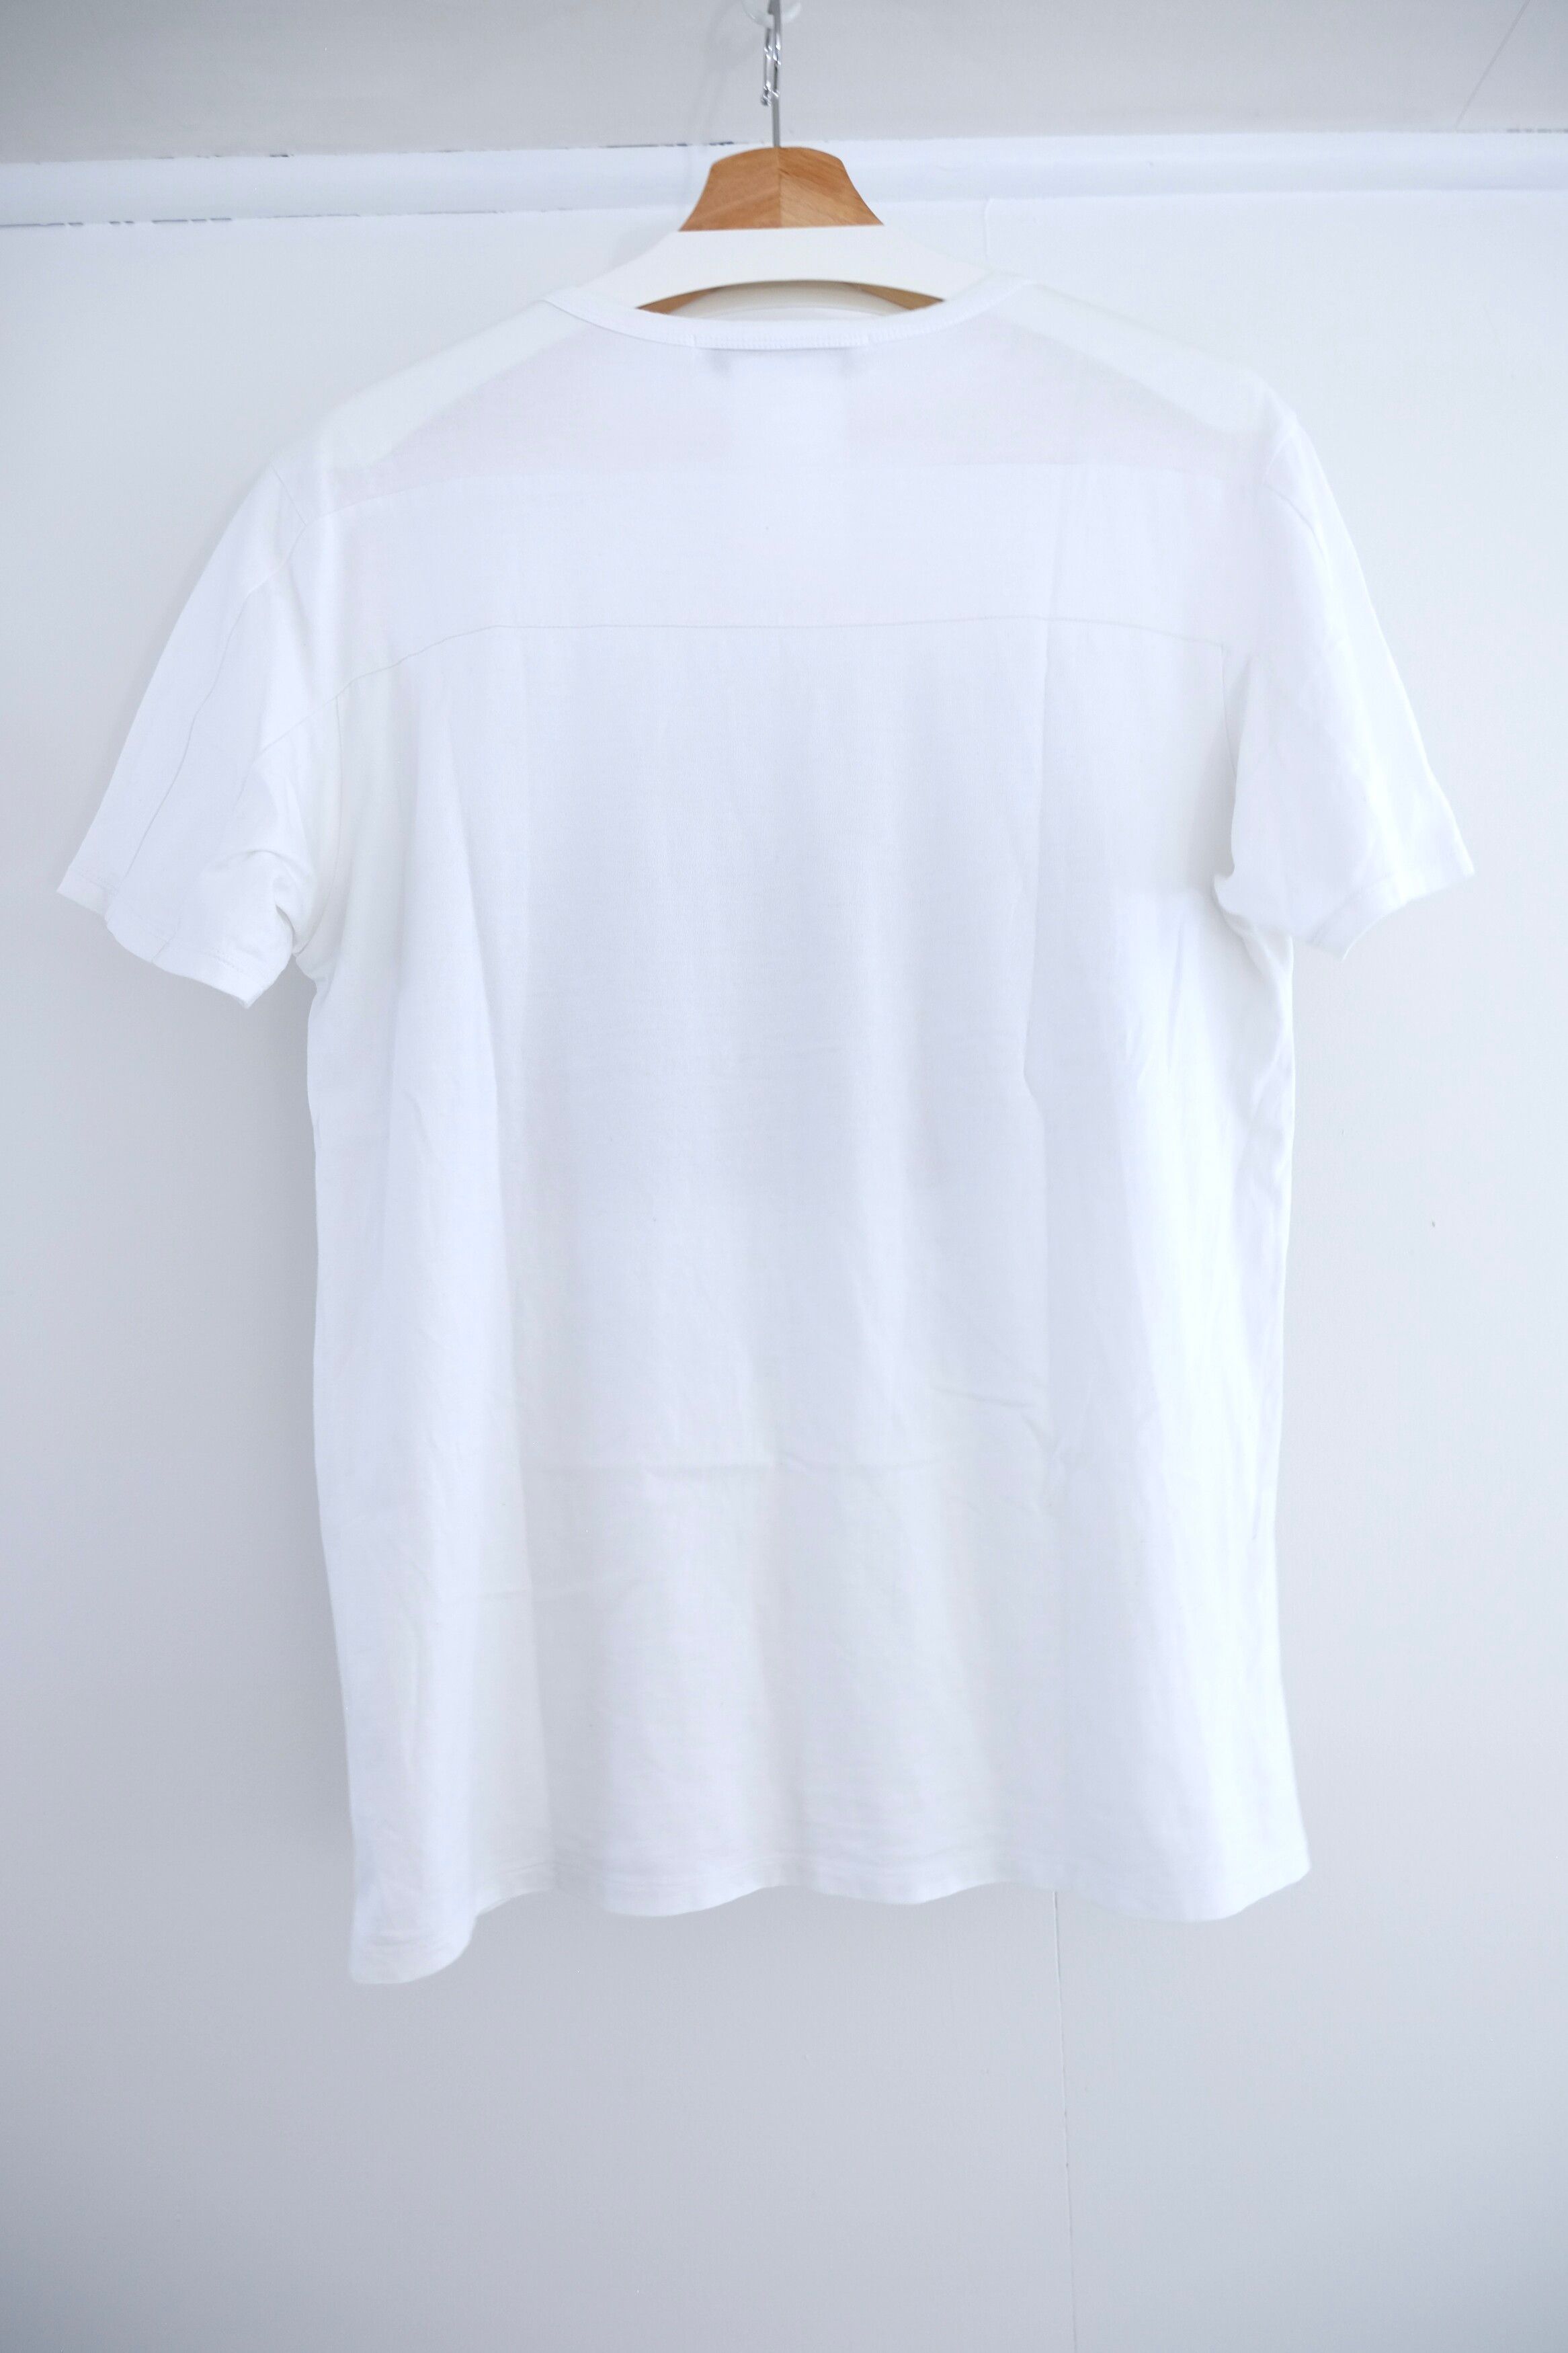 SS2017 Ocean (Silence) T-Shirt, Cotton, (JP 48) - 5